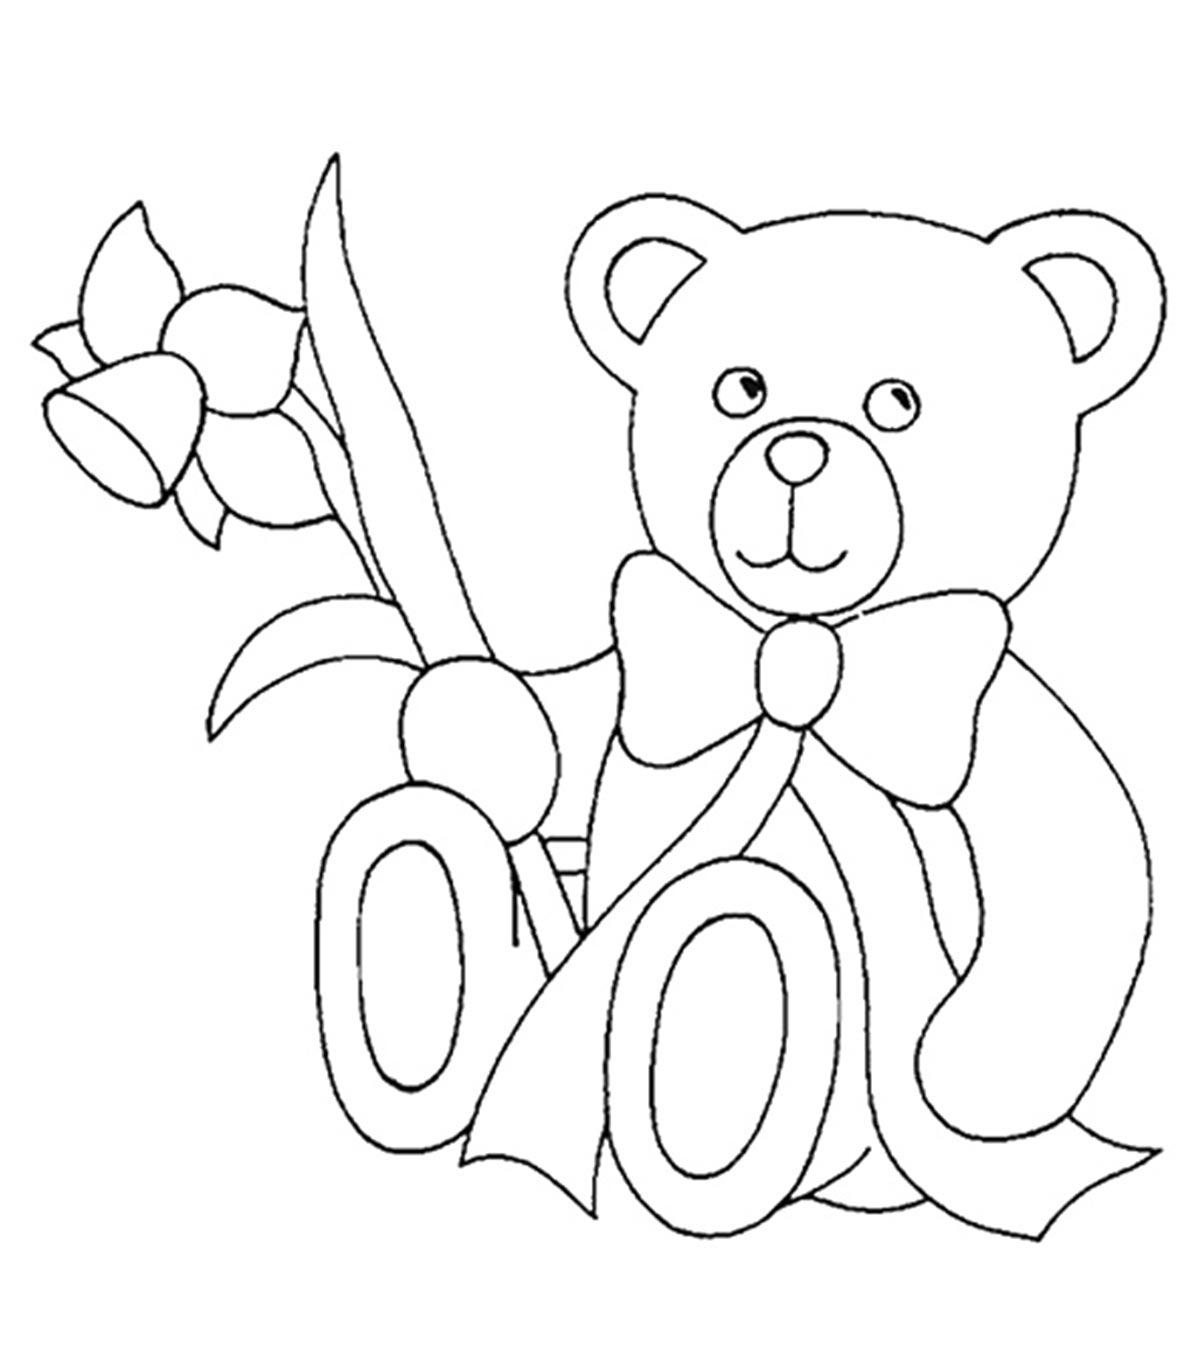 你的孩子会喜欢的18张泰迪熊涂色页万博体育手机官方网站登录